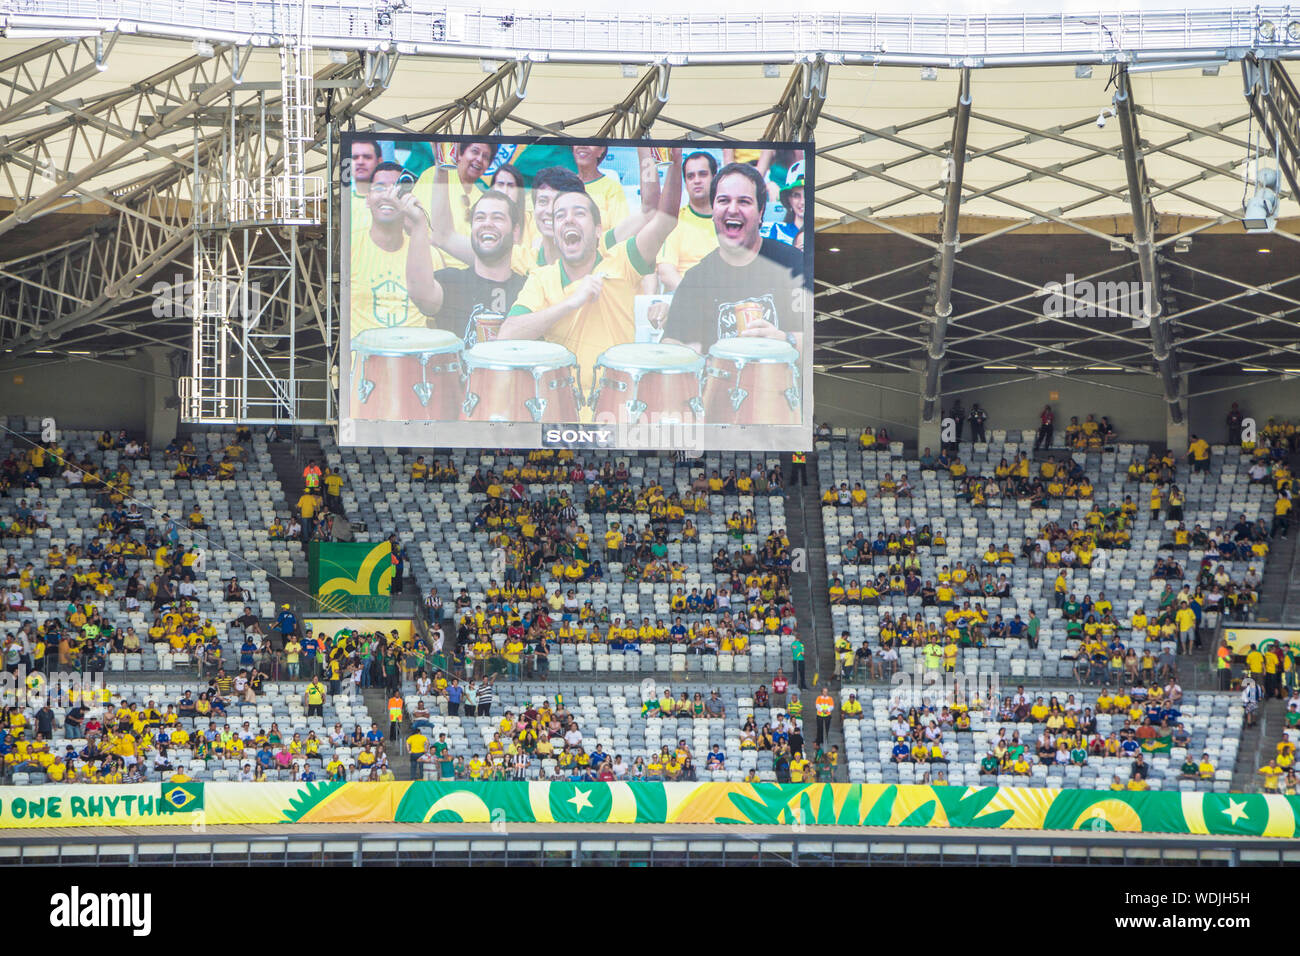 Confederations Cup 2013, Mineirão, Belo Horizonte, Minas Gerais, Brazil Stock Photo